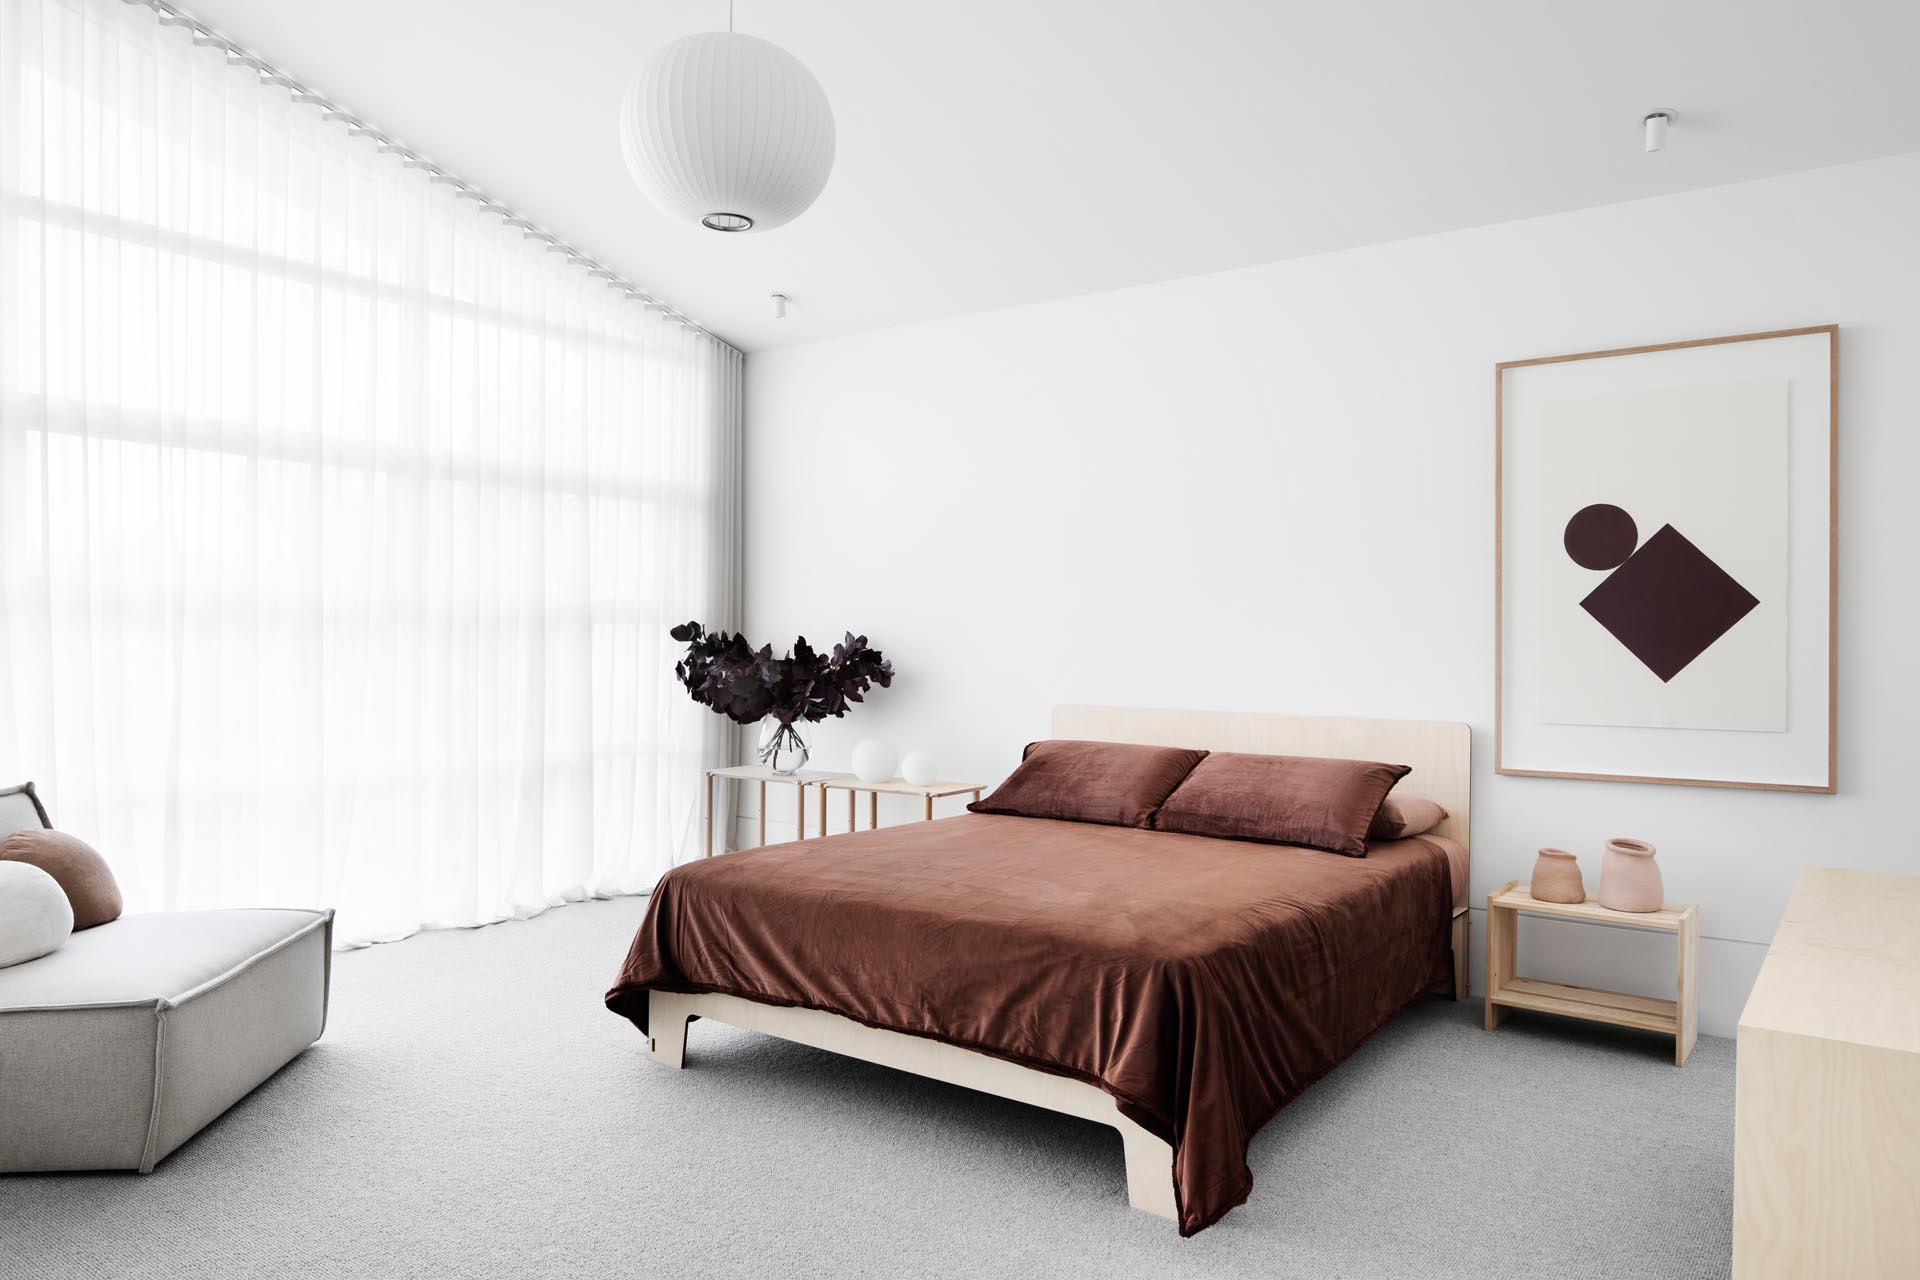 Trong phòng ngủ chính này, bộ đồ giường màu nâu sẫm tương phản với các yếu tố sáng hơn trong phòng, như sàn, bàn cạnh giường và ghế bọc.  